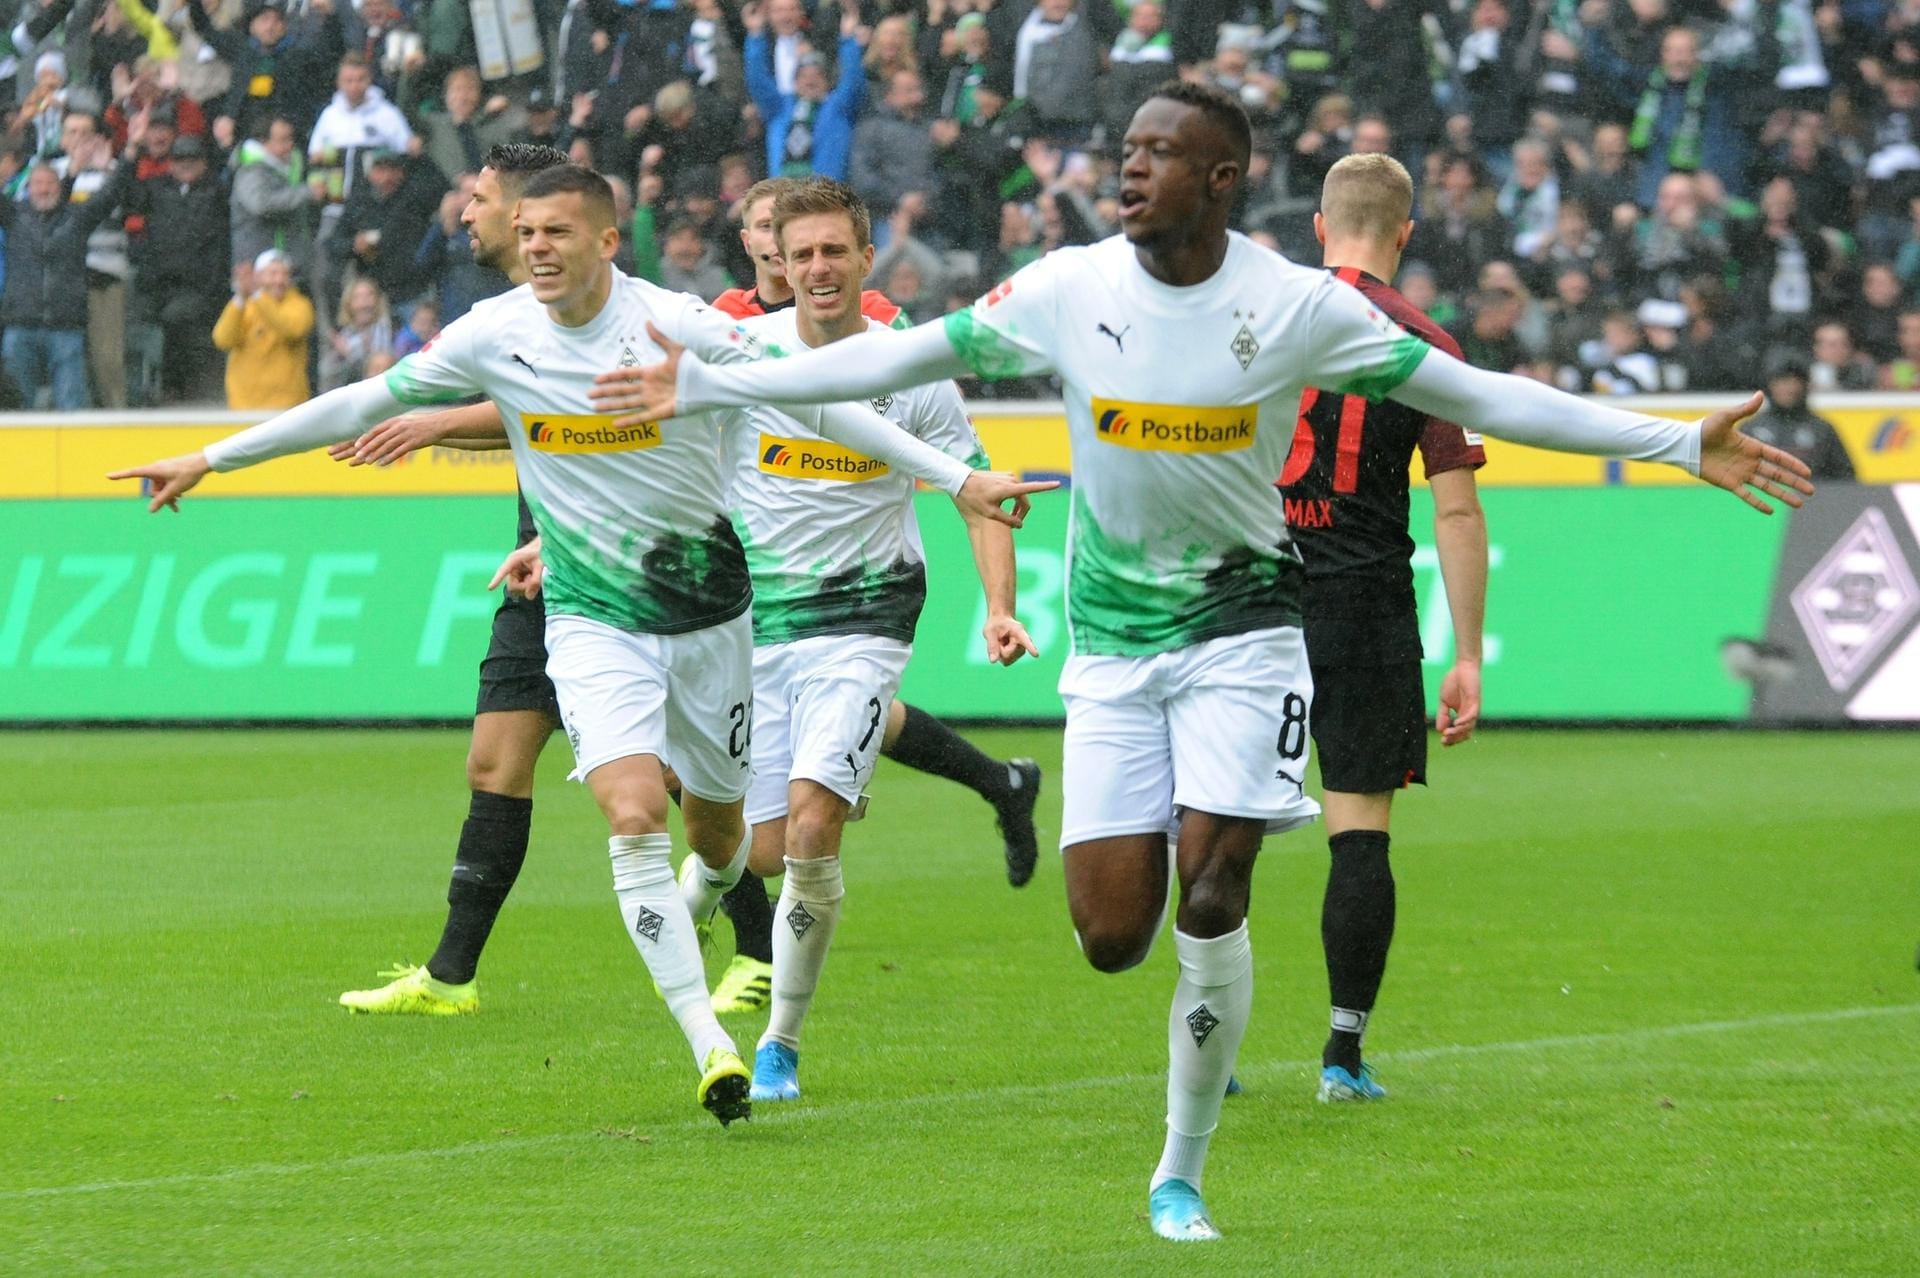 Treffer zur Mittagszeit: Gladbachs Denis Zakaria hat am 7. Spieltag gegen Augsburg das früheste Tor der Bundesligahistorie erzielt. Als er den Ball über die Linie bugsierte, war es exakt 13.32 Uhr.